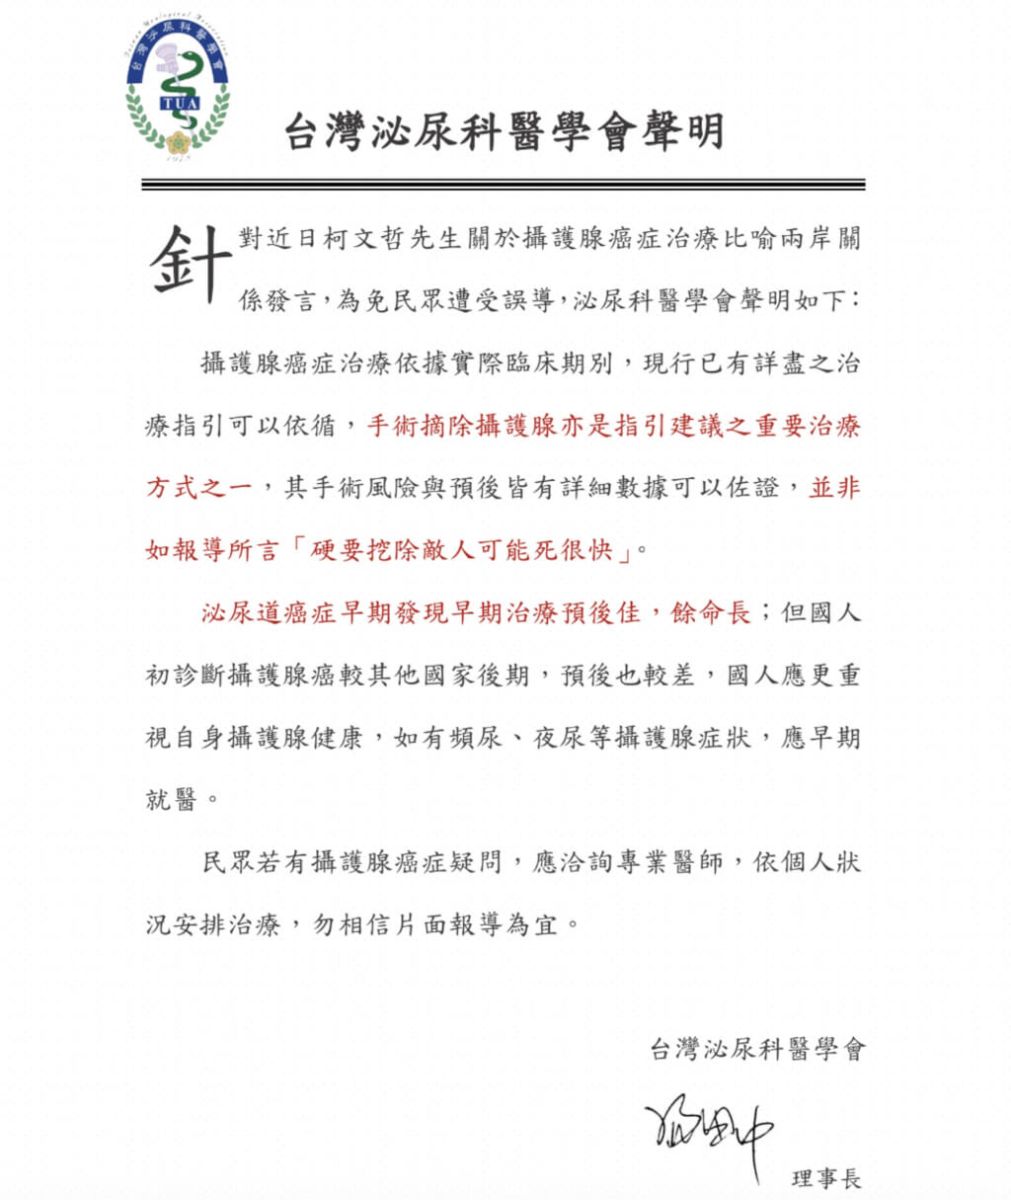 台灣泌尿科醫學會也發表聲明打臉柯文哲。翻攝台灣泌尿科醫學會網頁